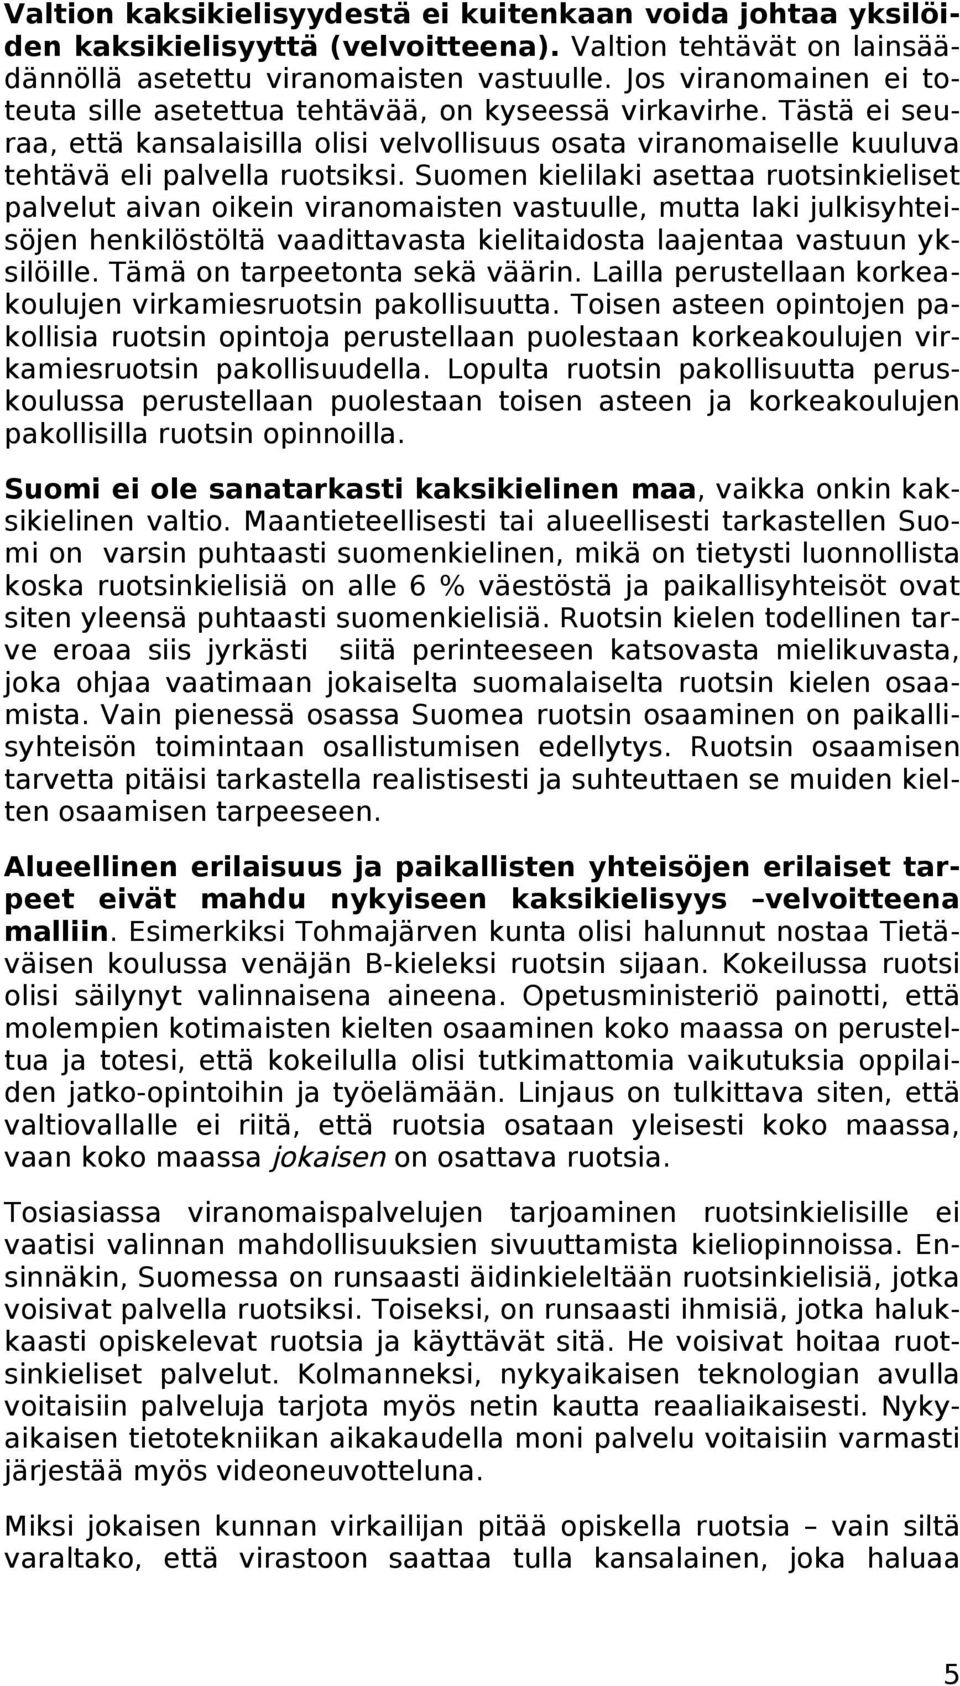 Suomen kielilaki asettaa ruotsinkieliset palvelut aivan oikein viranomaisten vastuulle, mutta laki julkisyhteisöjen henkilöstöltä vaadittavasta kielitaidosta laajentaa vastuun yksilöille.